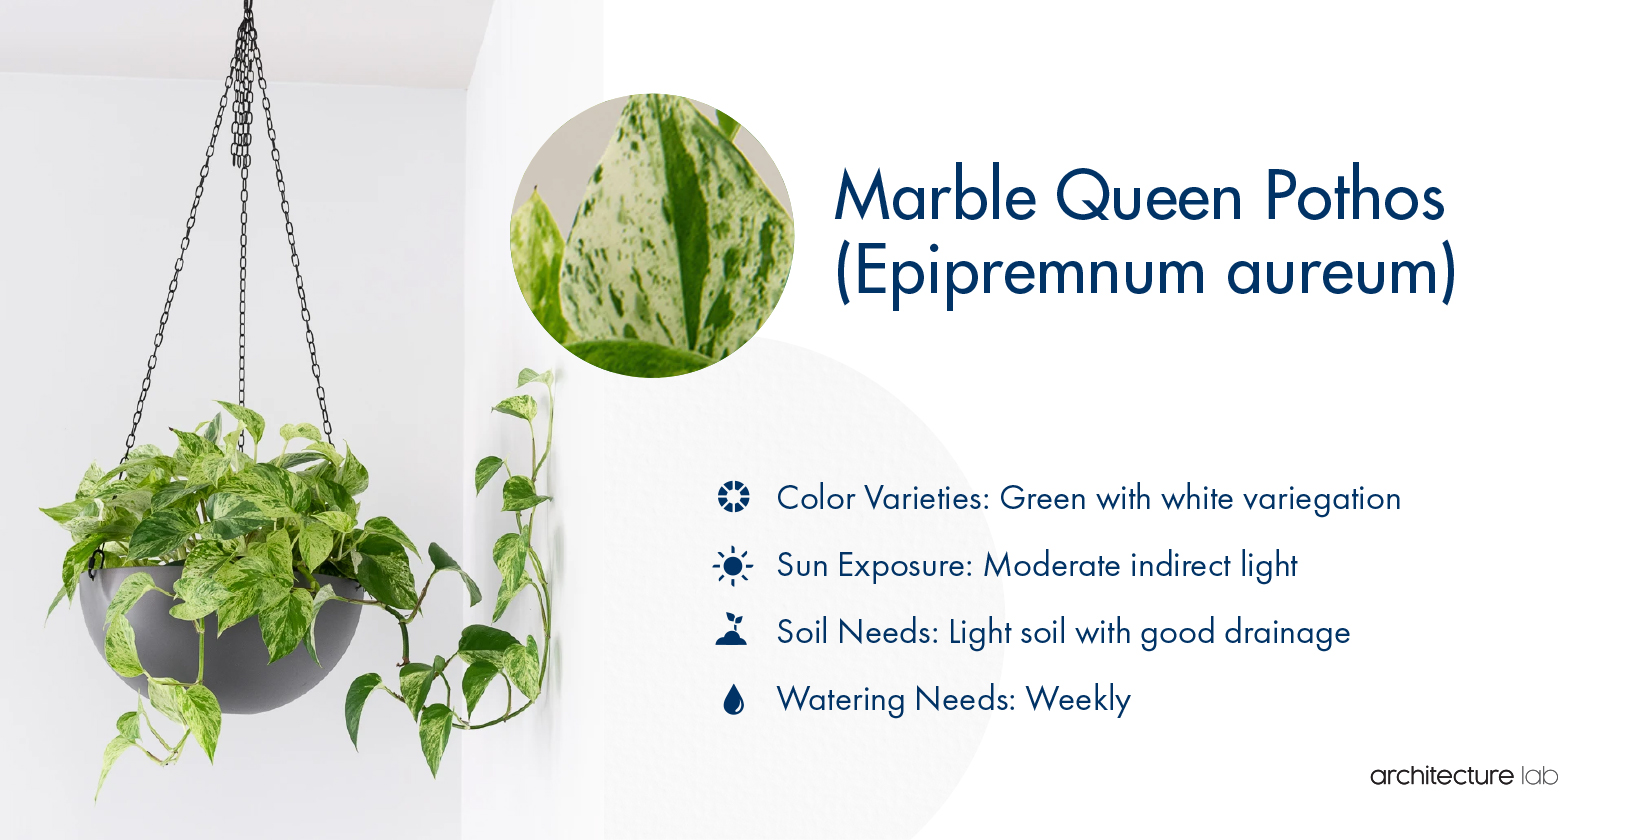 25. Marble queen pothos (epipremnum aureum)